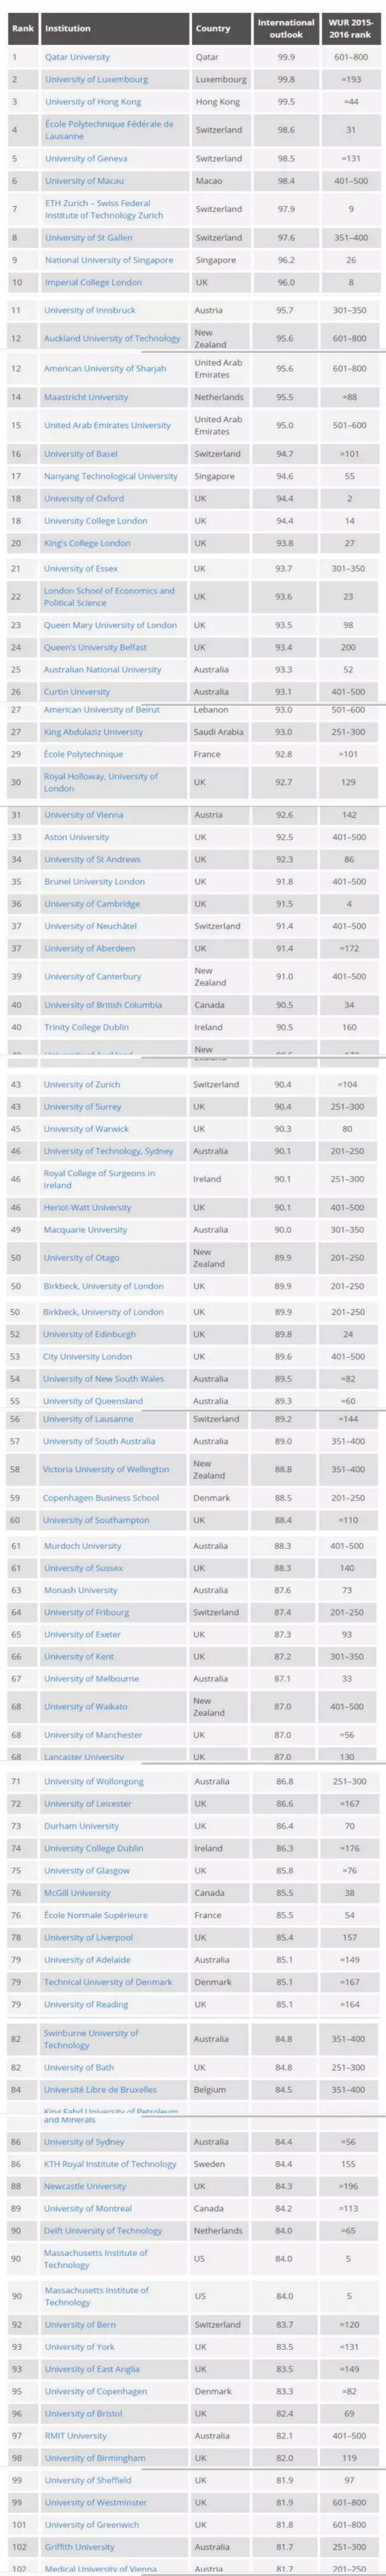 全球最国际化大学排行榜